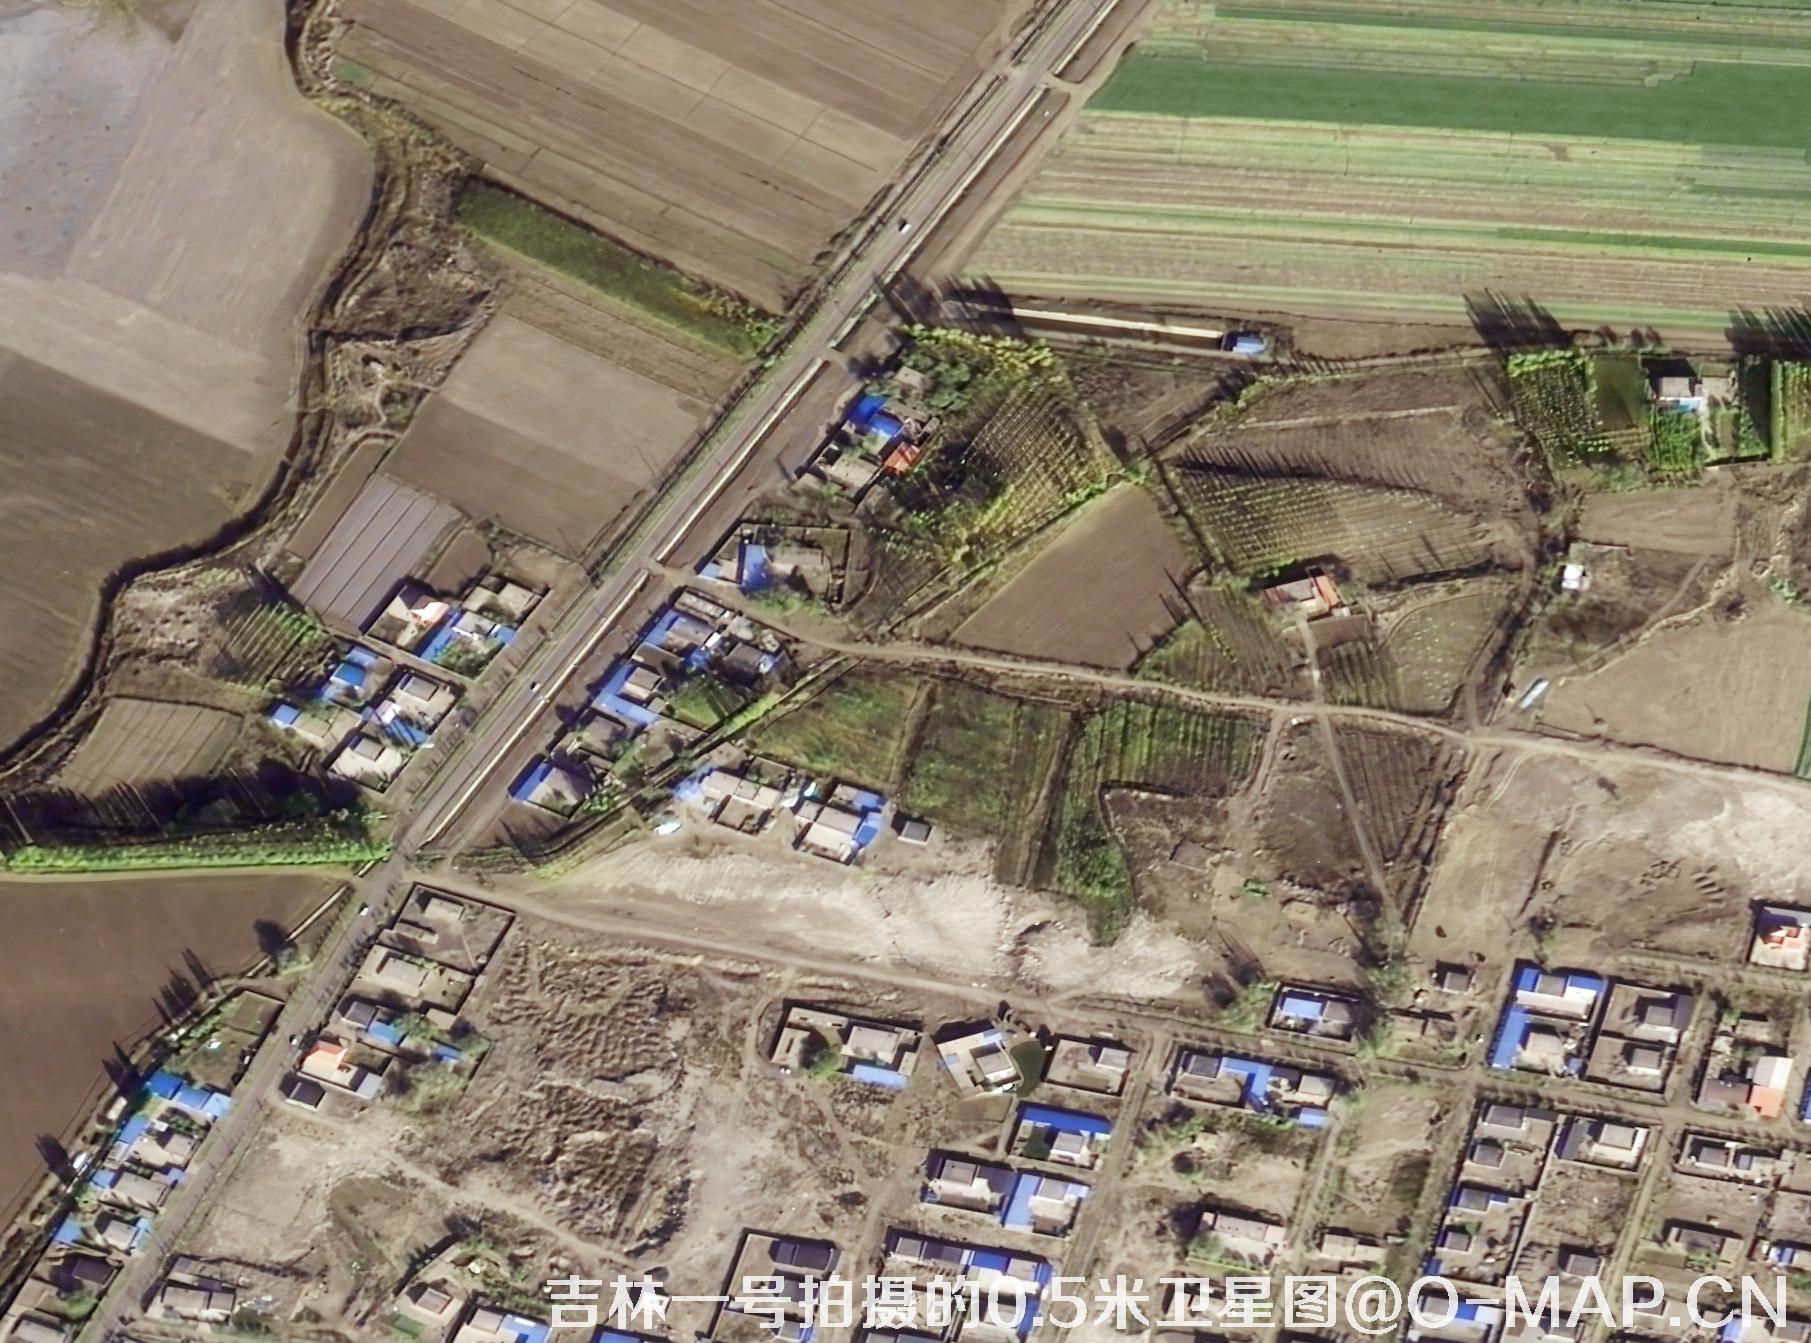 吉林一号拍摄的0.5米农村房屋卫星图